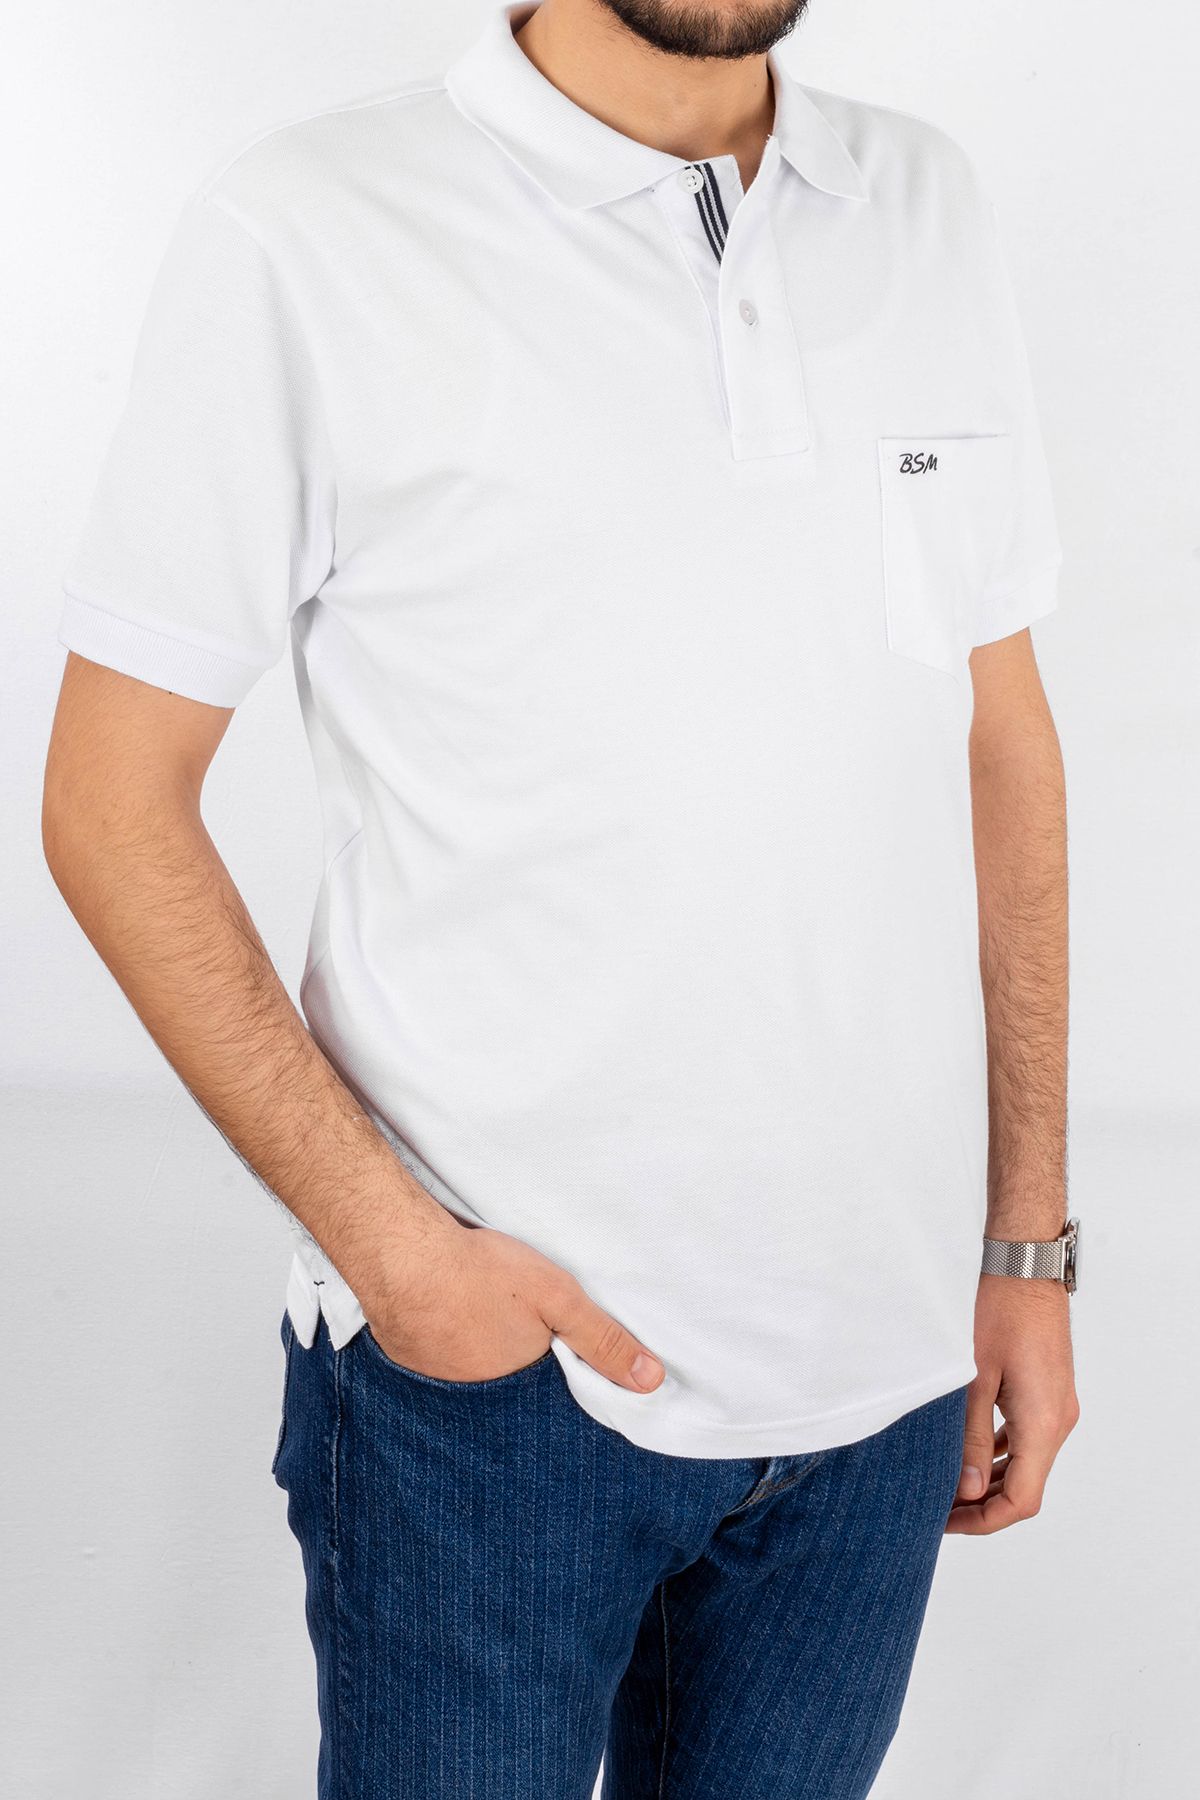 BSM Erkek Yüksek Kalite Cepli Kısa Kollu Polo Yaka Beyaz Pike T-Shirt